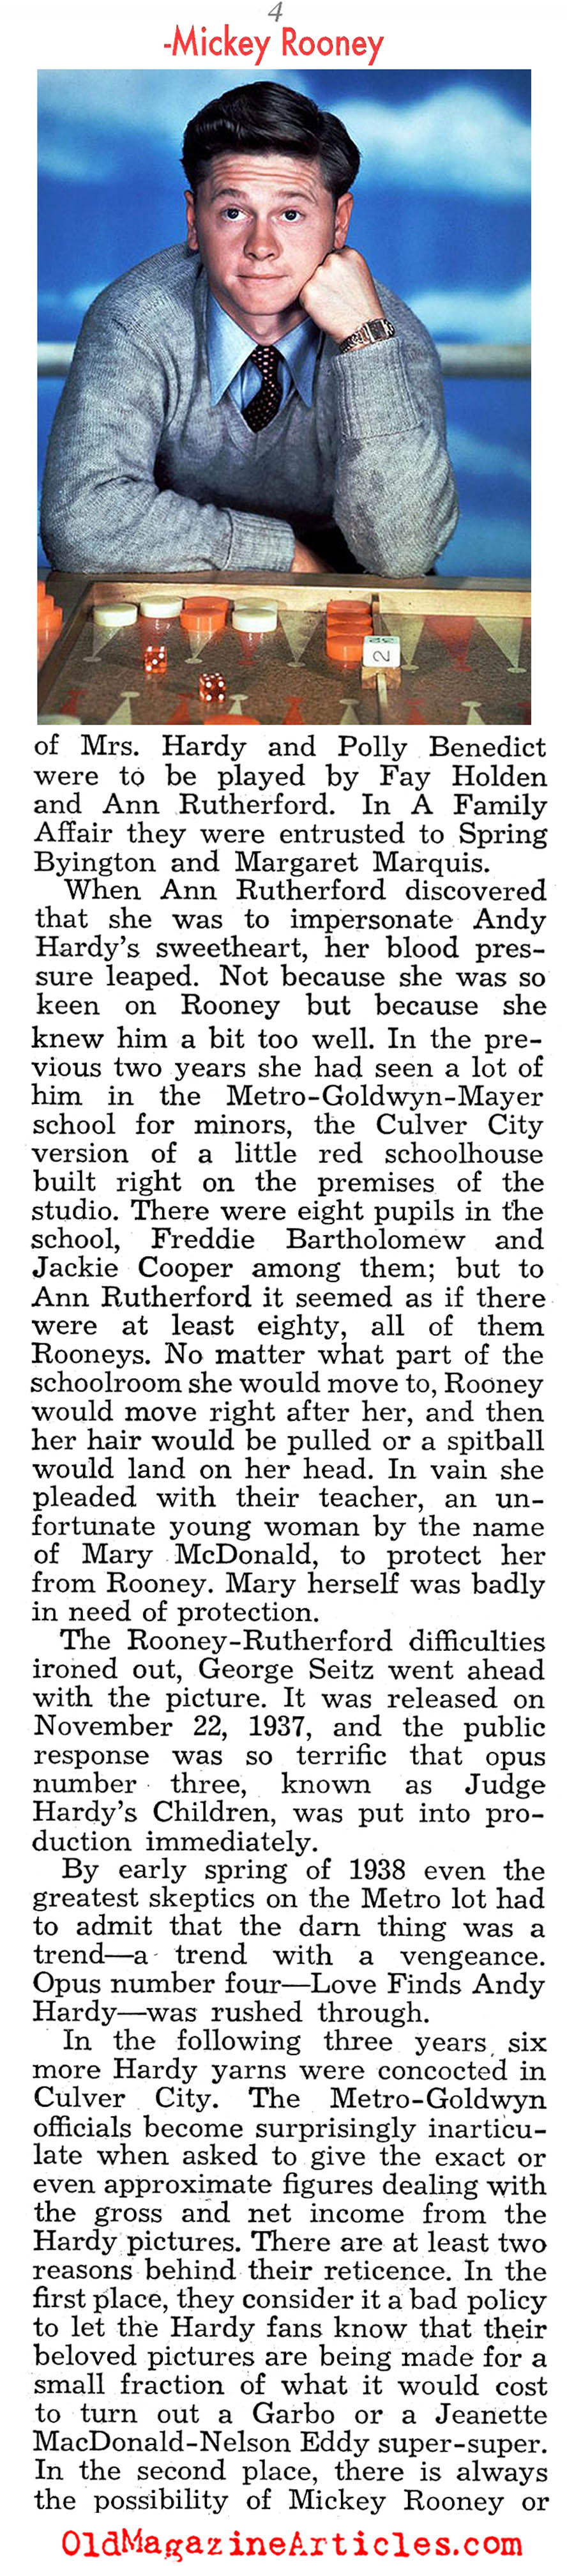 ''Box Office Man No. 1 (Liberty Magazine, 1942)